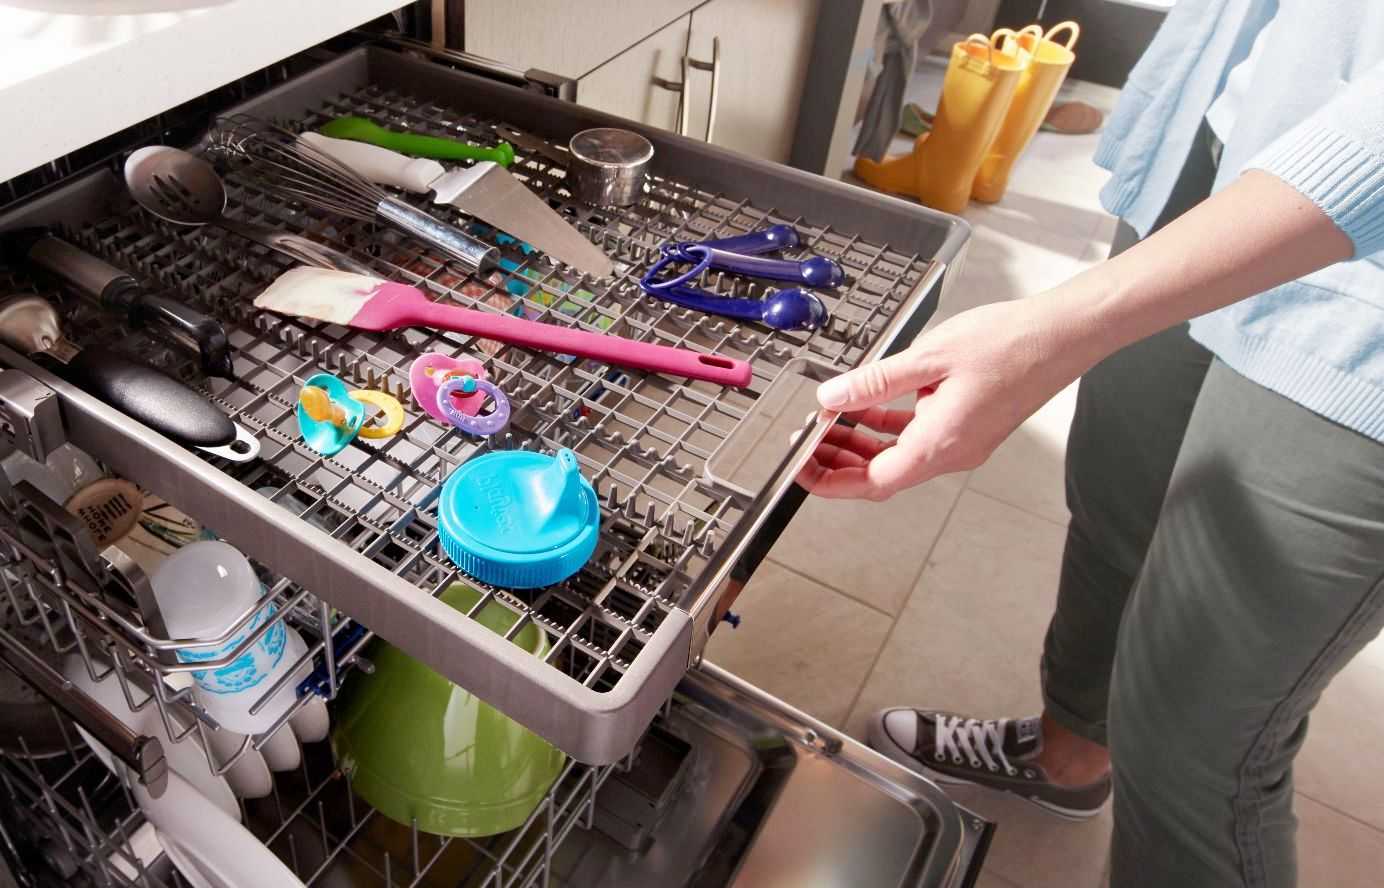 Как пользоваться посудомоечной машиной, правила и рекомендации